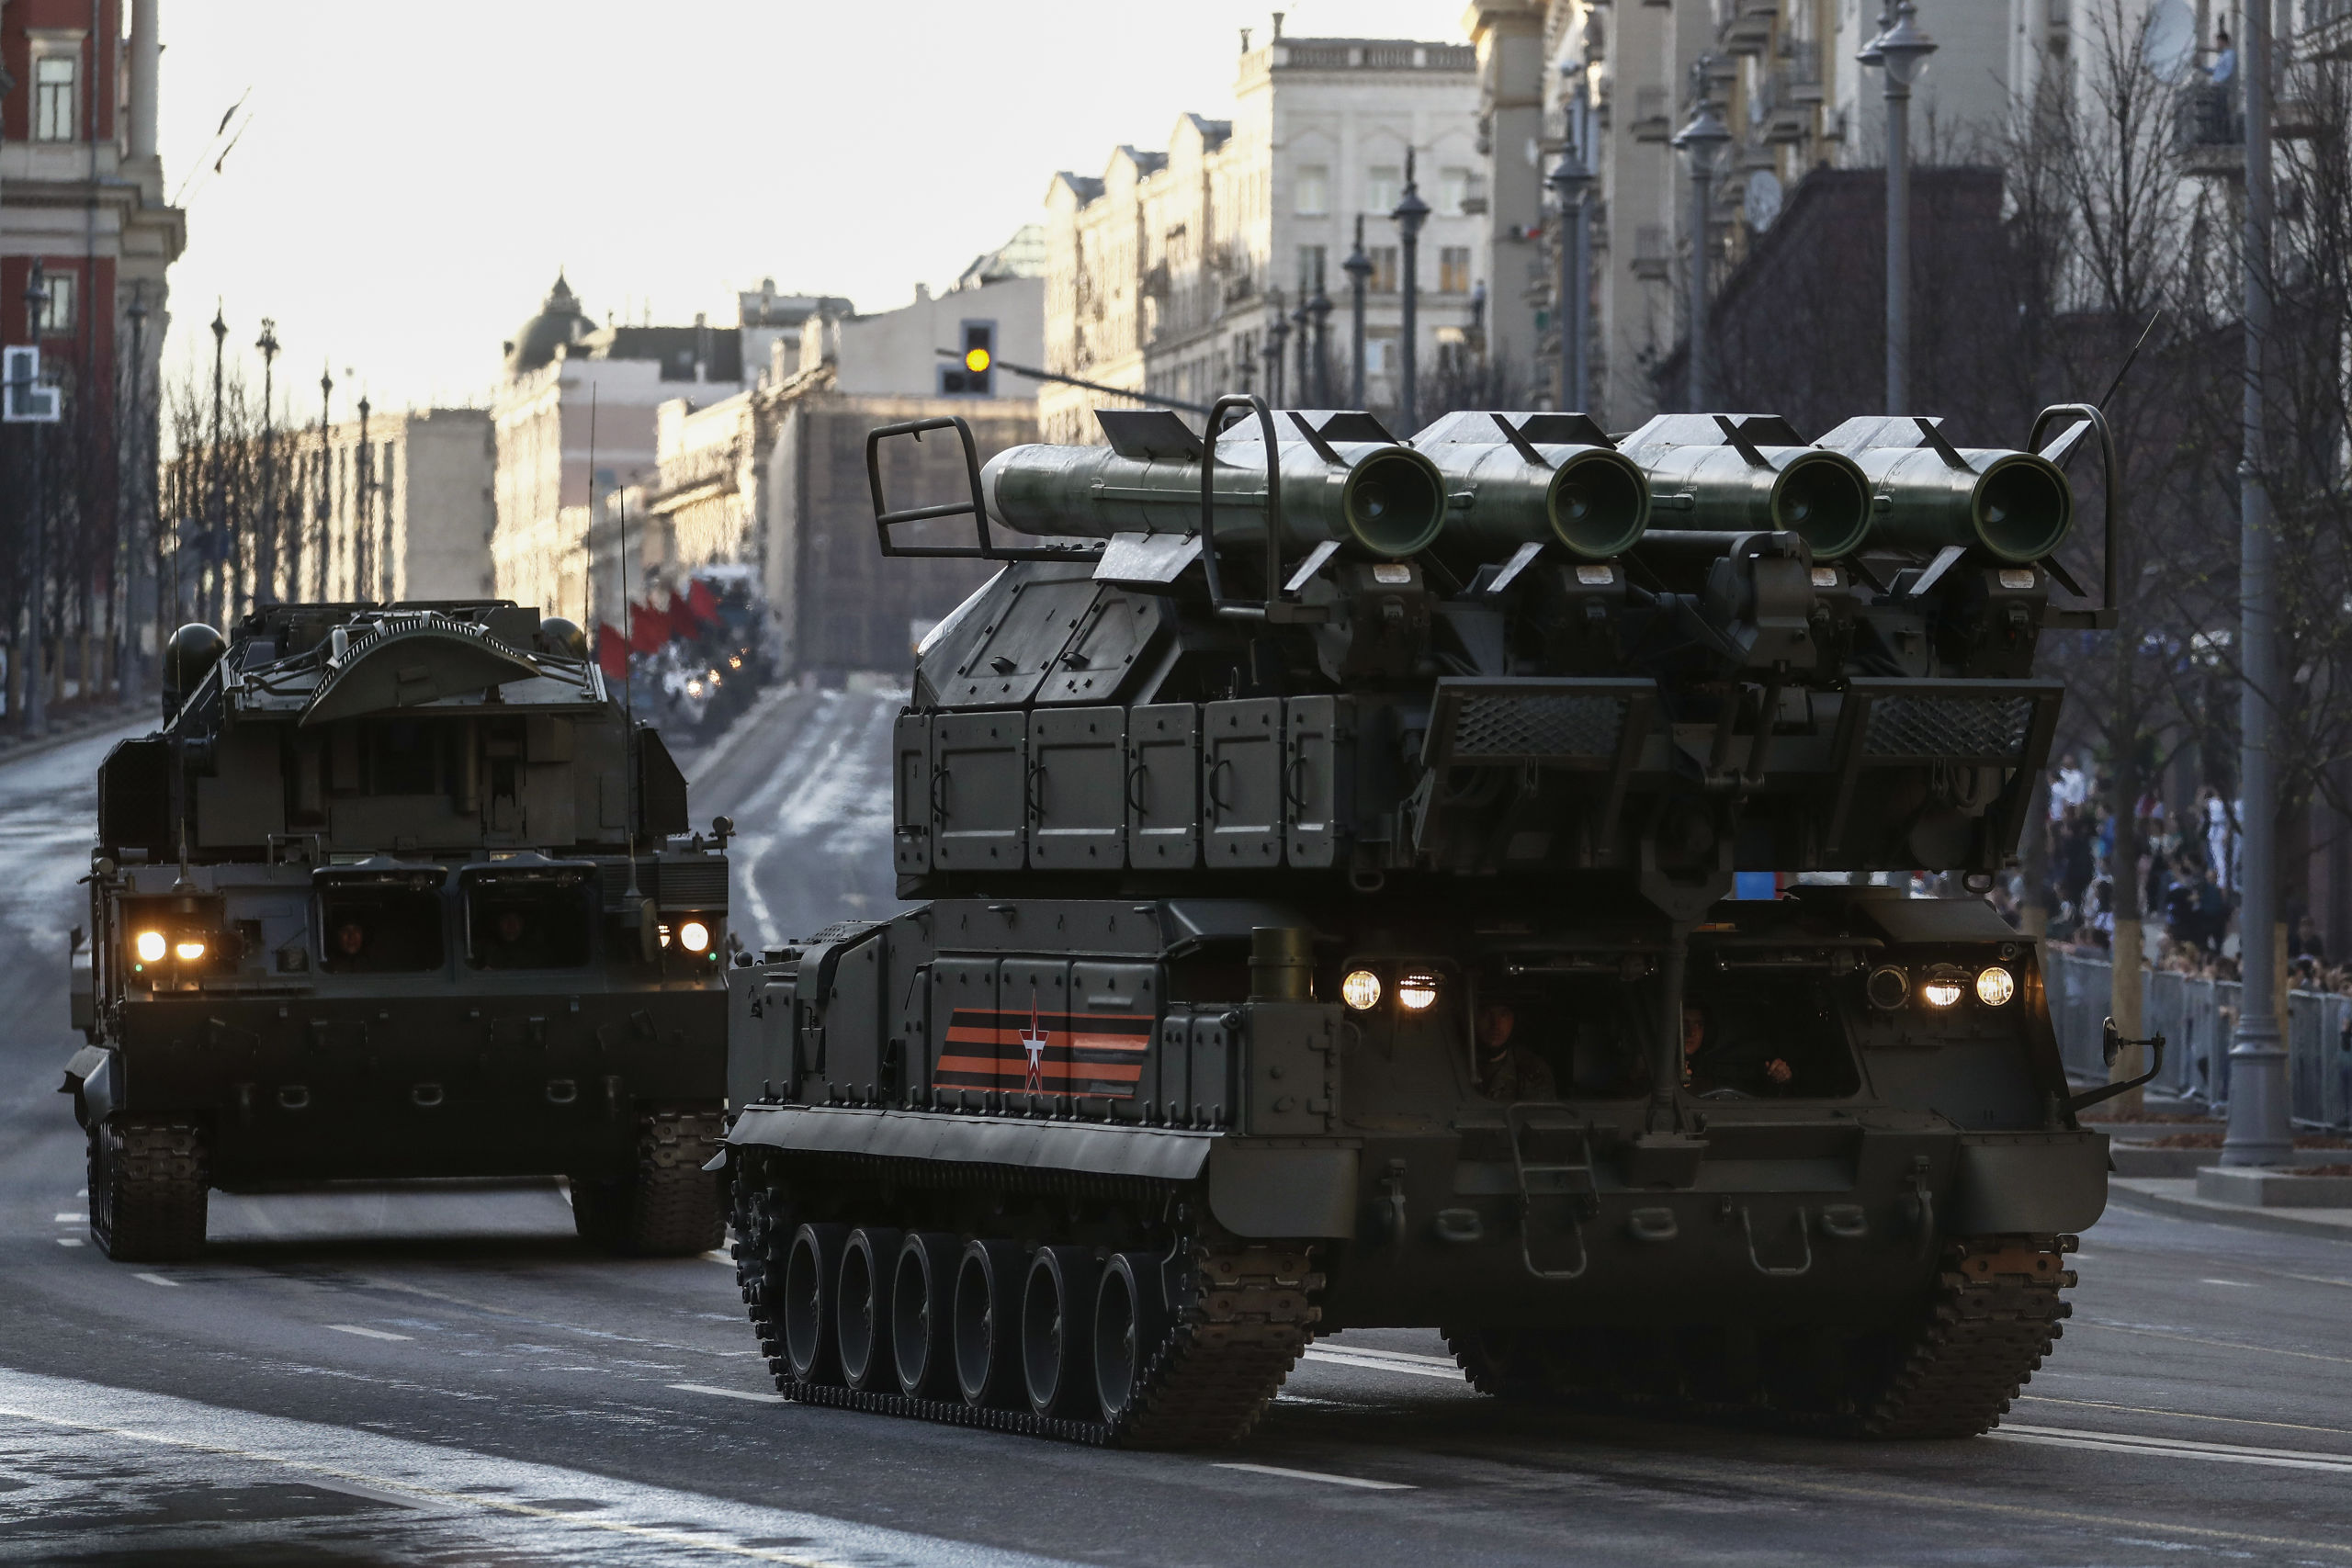 Een BUK-raketsysteem tijdens een parade in Moskou. Dit raketsysteem kan de raket afvuren waarmee vlucht MH17 is neergehaald.